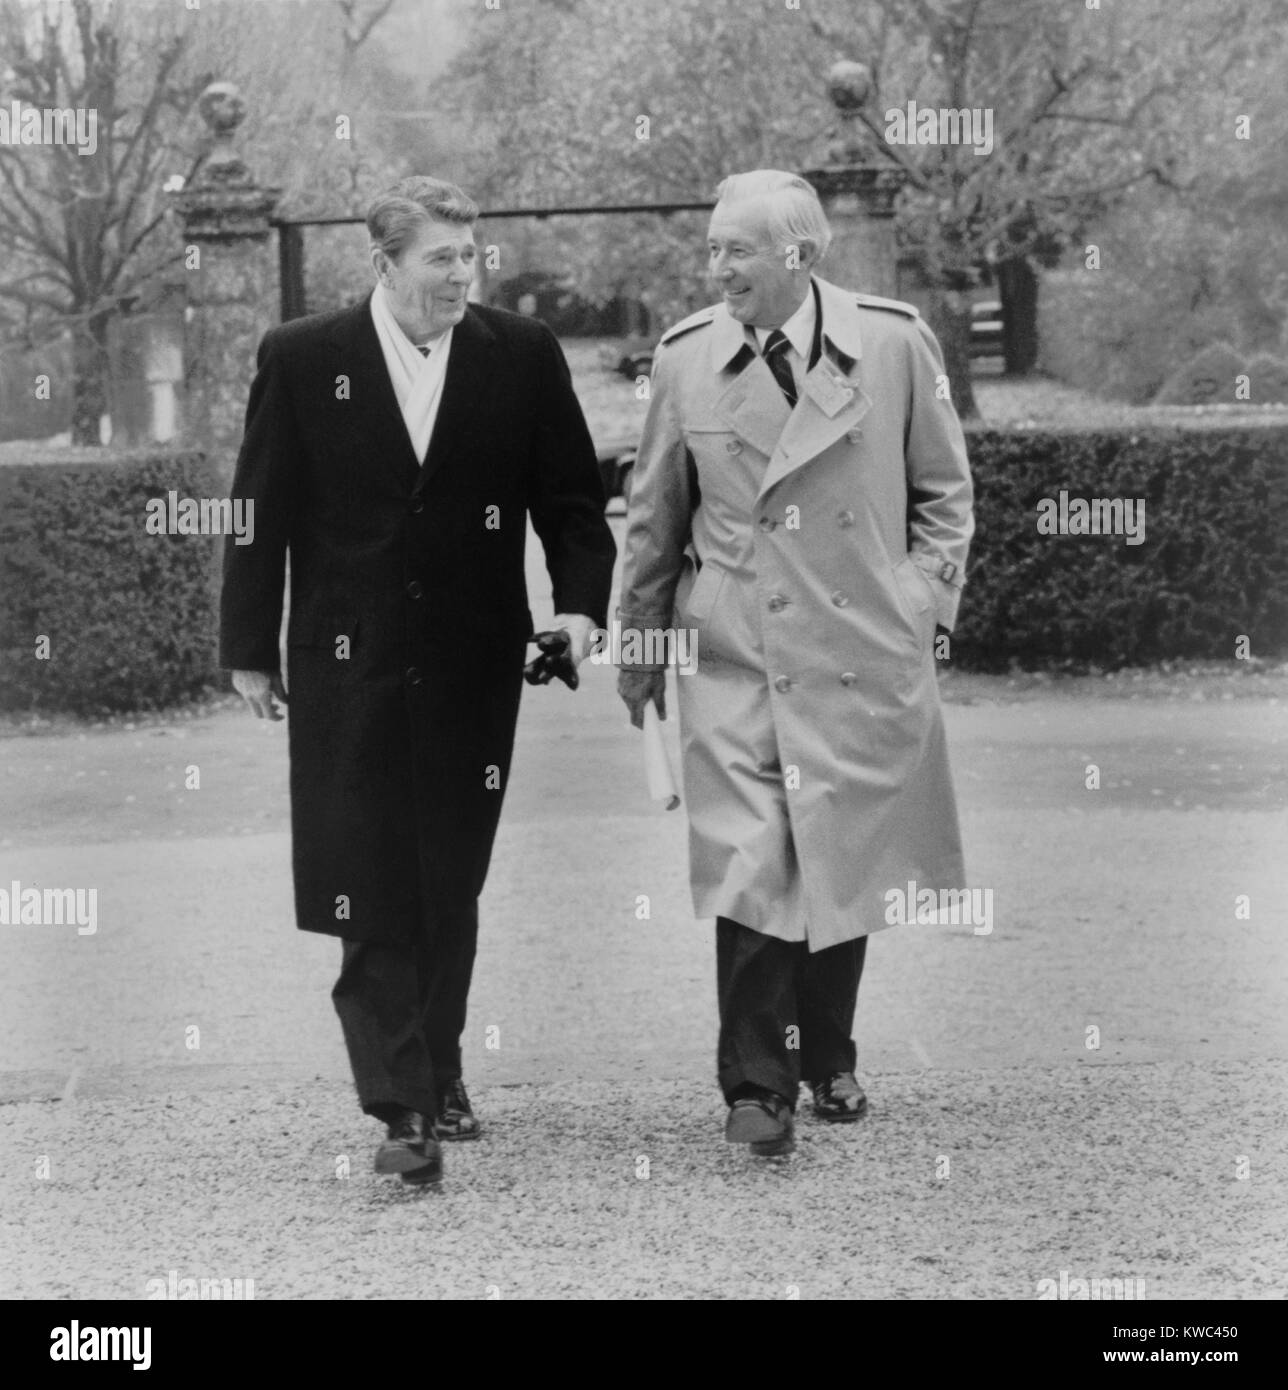 Il Presidente Ronald Reagan e Donald Regan, Capo del Personale della Casa Bianca, nov. 1985. Essi sono stati a Ginevra, in Svizzera, nel corso di un incontro al vertice con il leader sovietico Mikhail Gorbachev. (BSLOC 2015 14 75) Foto Stock